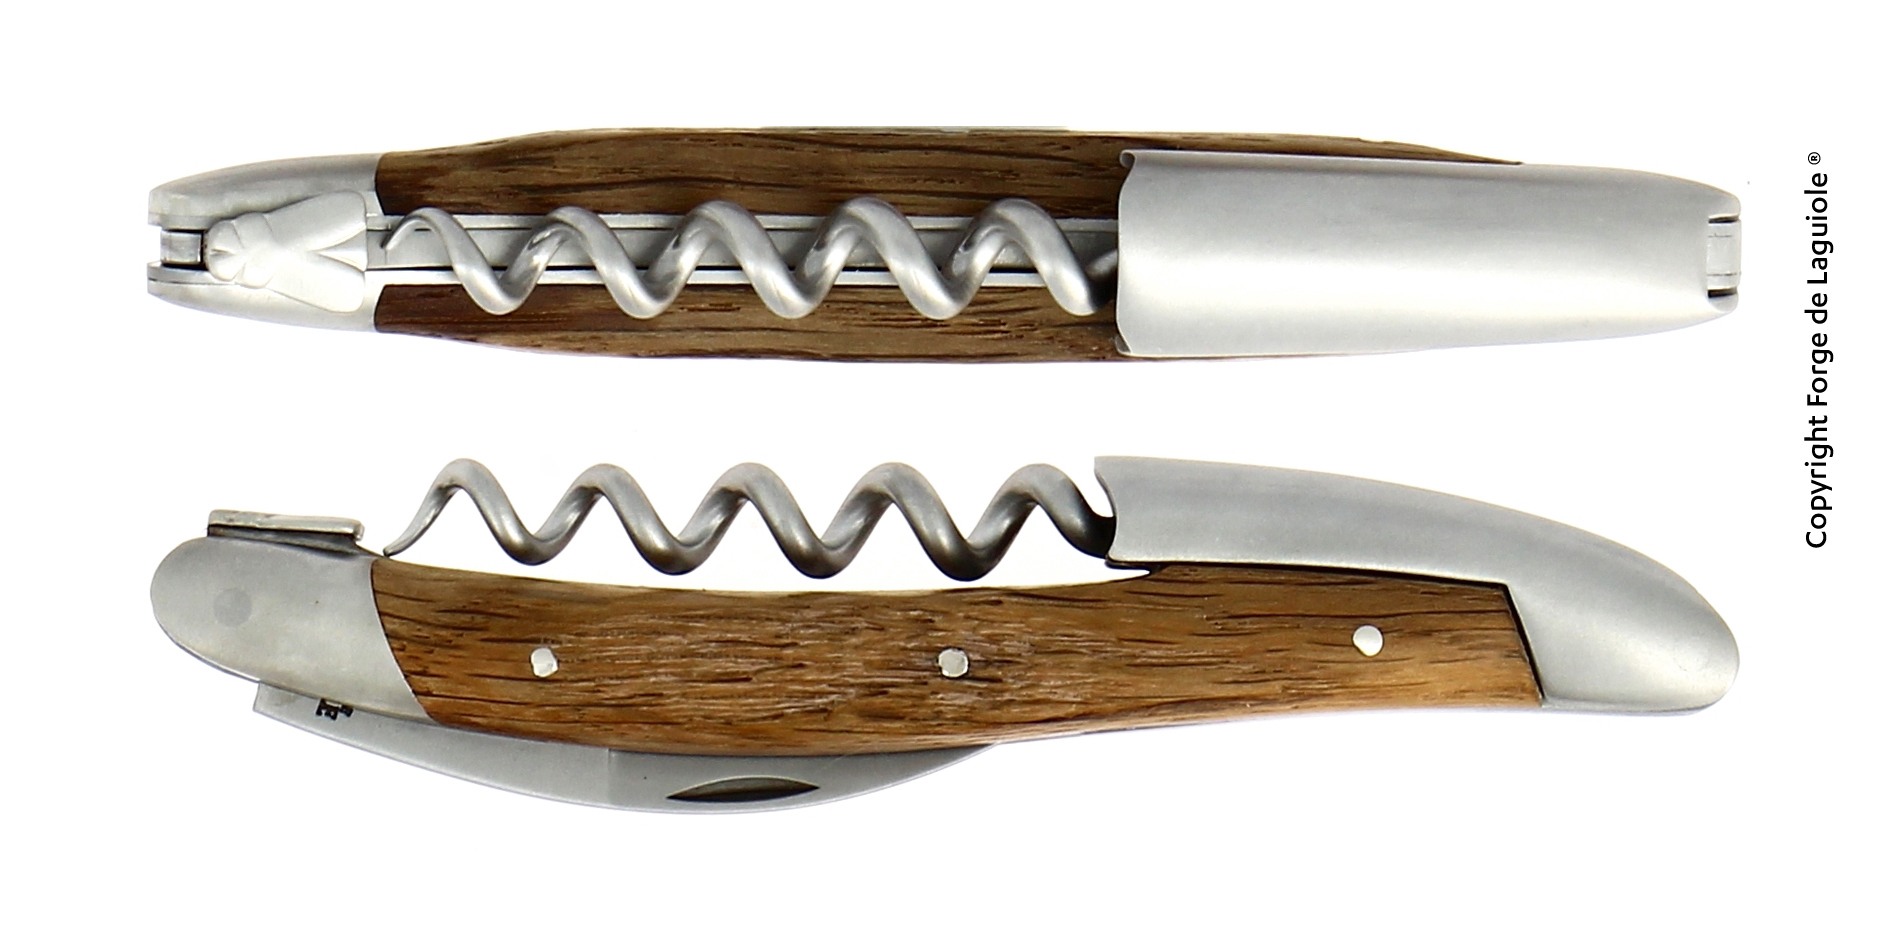 Sommelier Messer mit Griff aus Mooreiche, 5000 jahre alt, Rinde